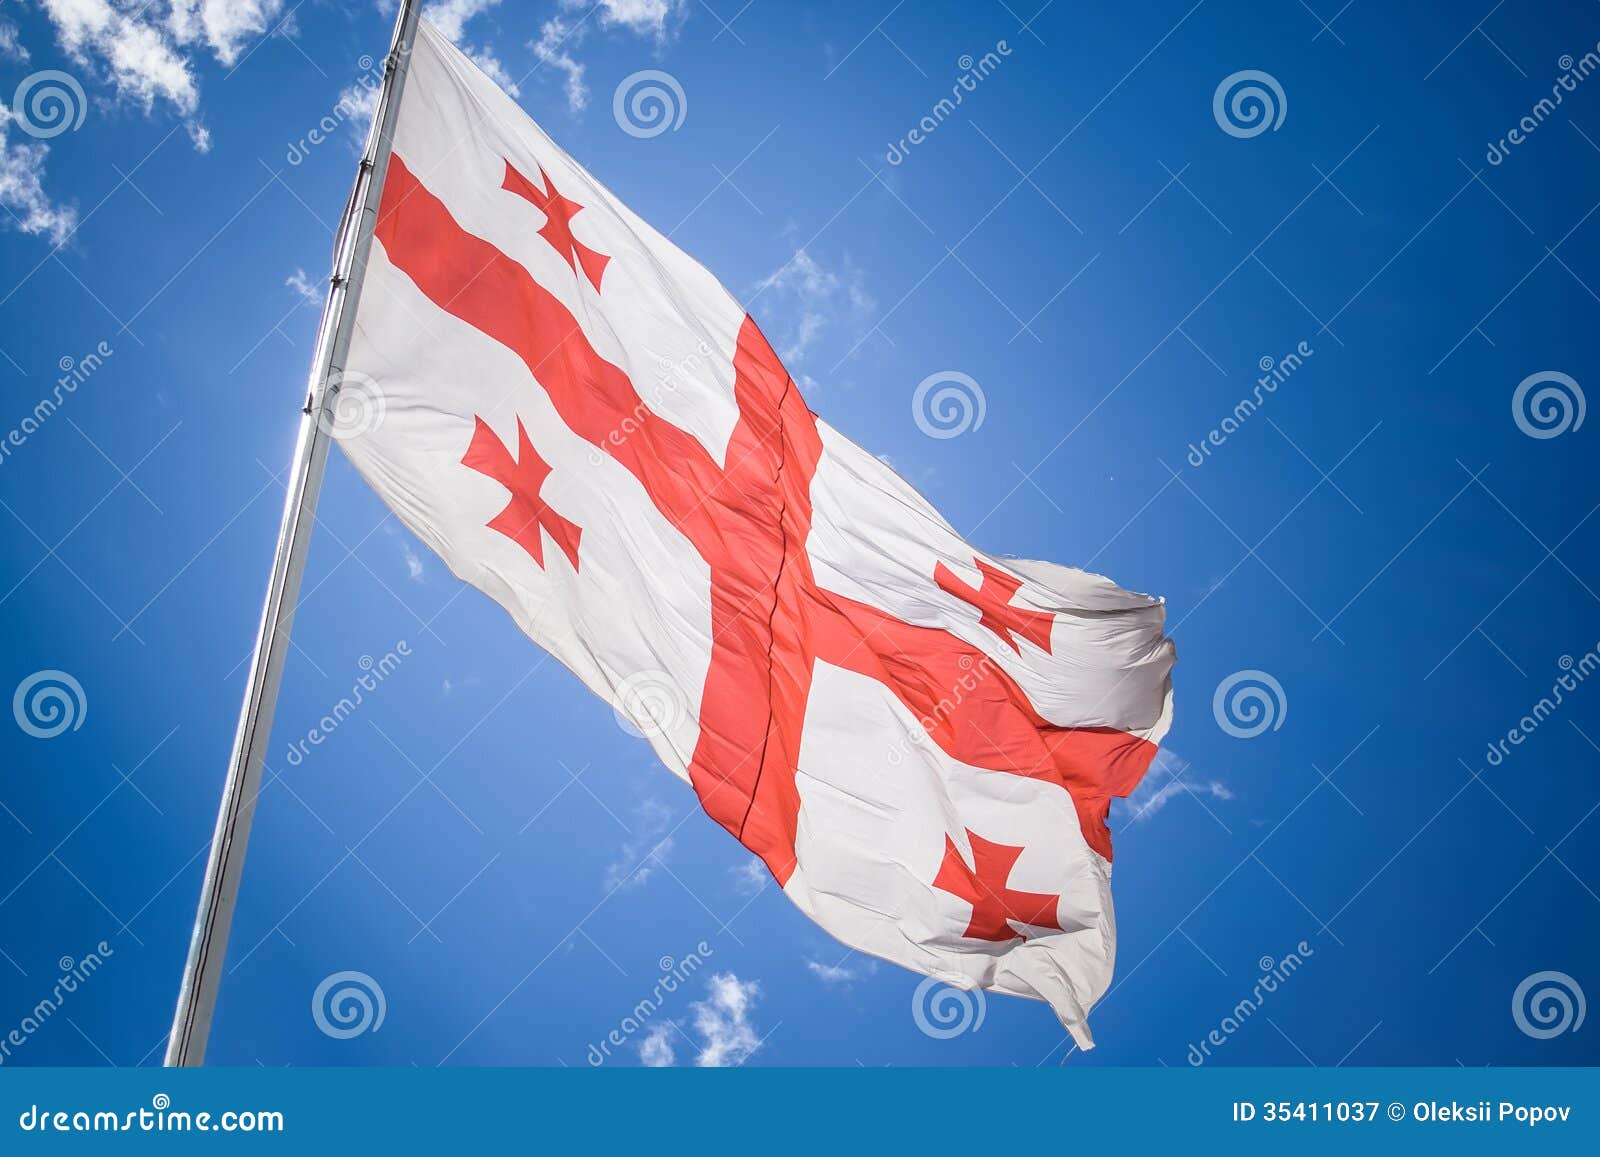 Σημαία της Γεωργίας κάτω από τον ουρανό. Σημαία της Γεωργίας που κυματίζει στον αέρα κάτω από τον ουρανό